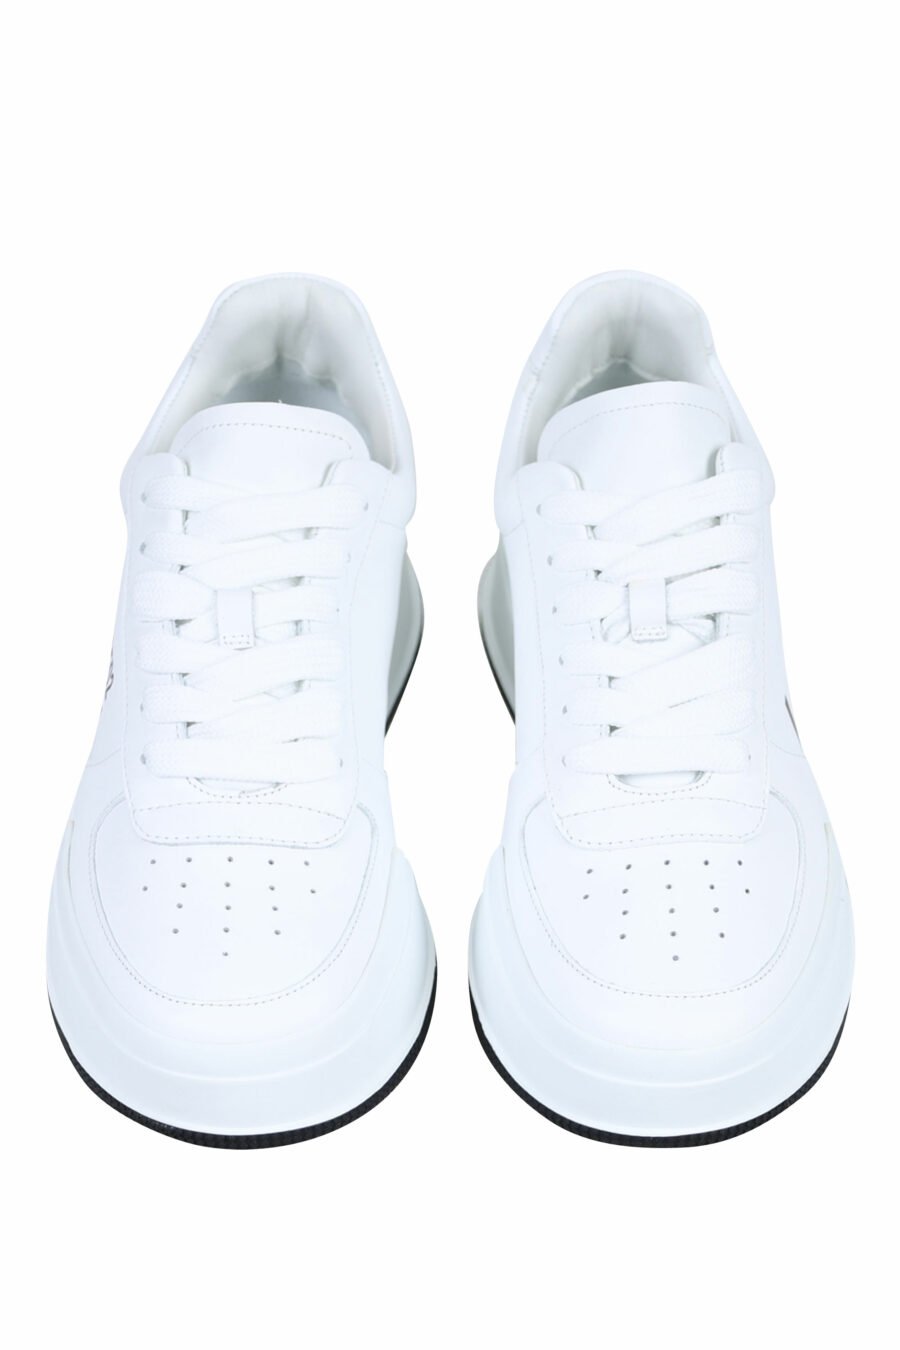 Zapatillas blancas con logo "icon" y suela negra - 8055777248850 4